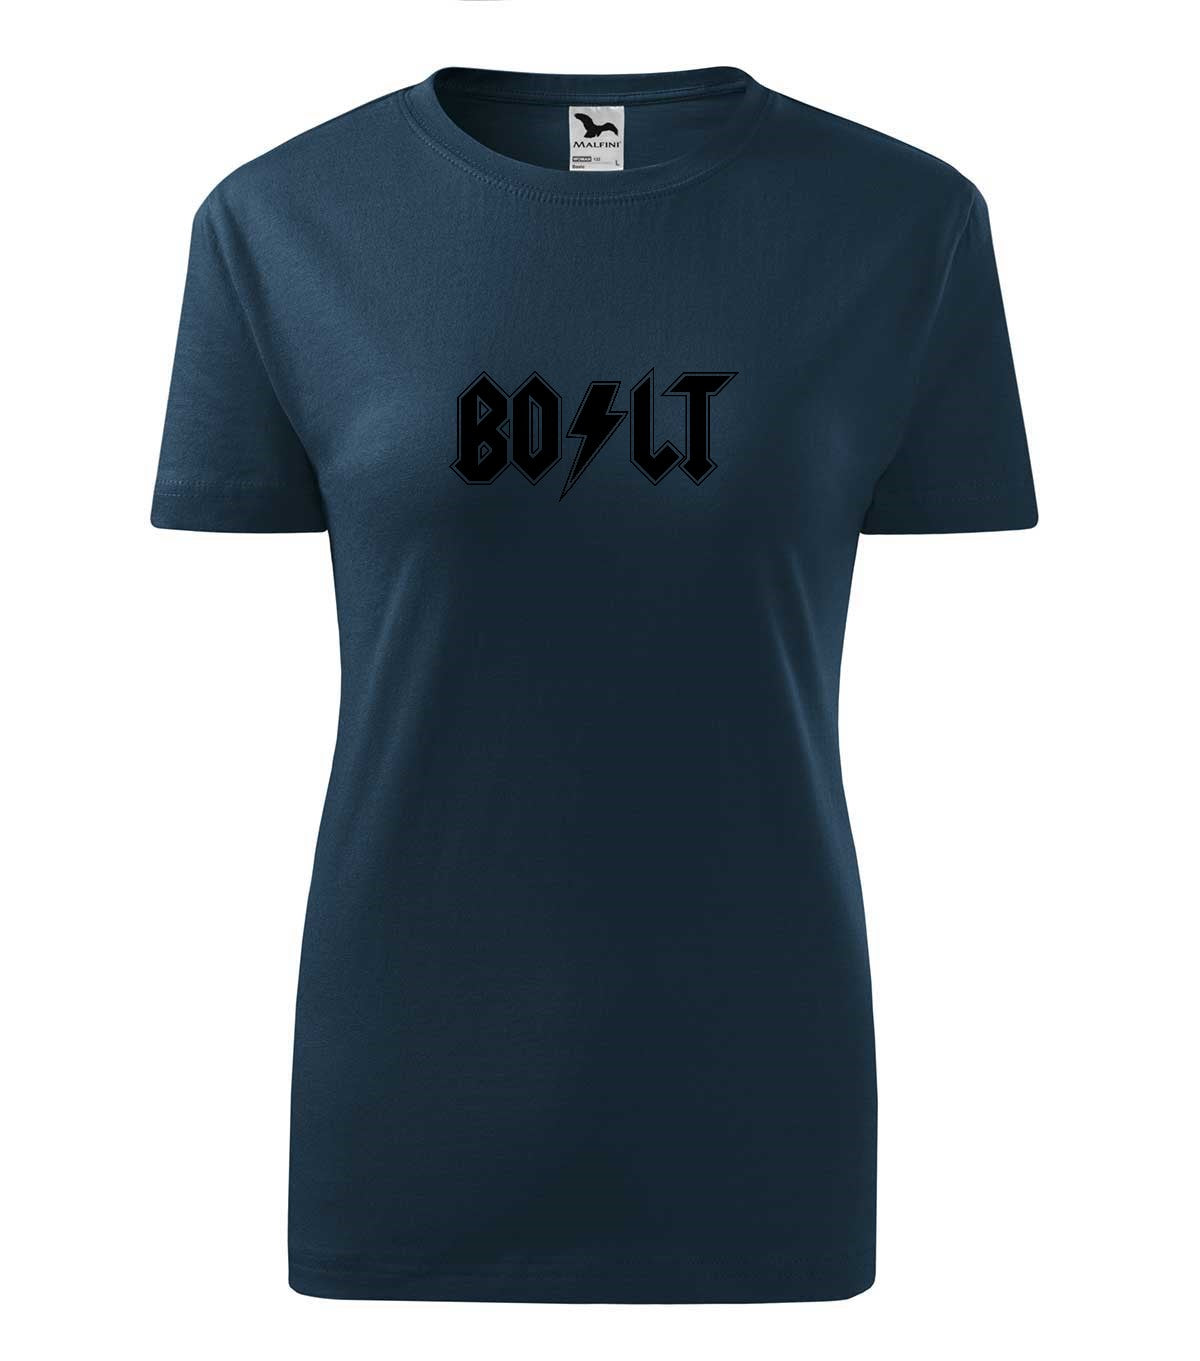 Bolt női technikai póló